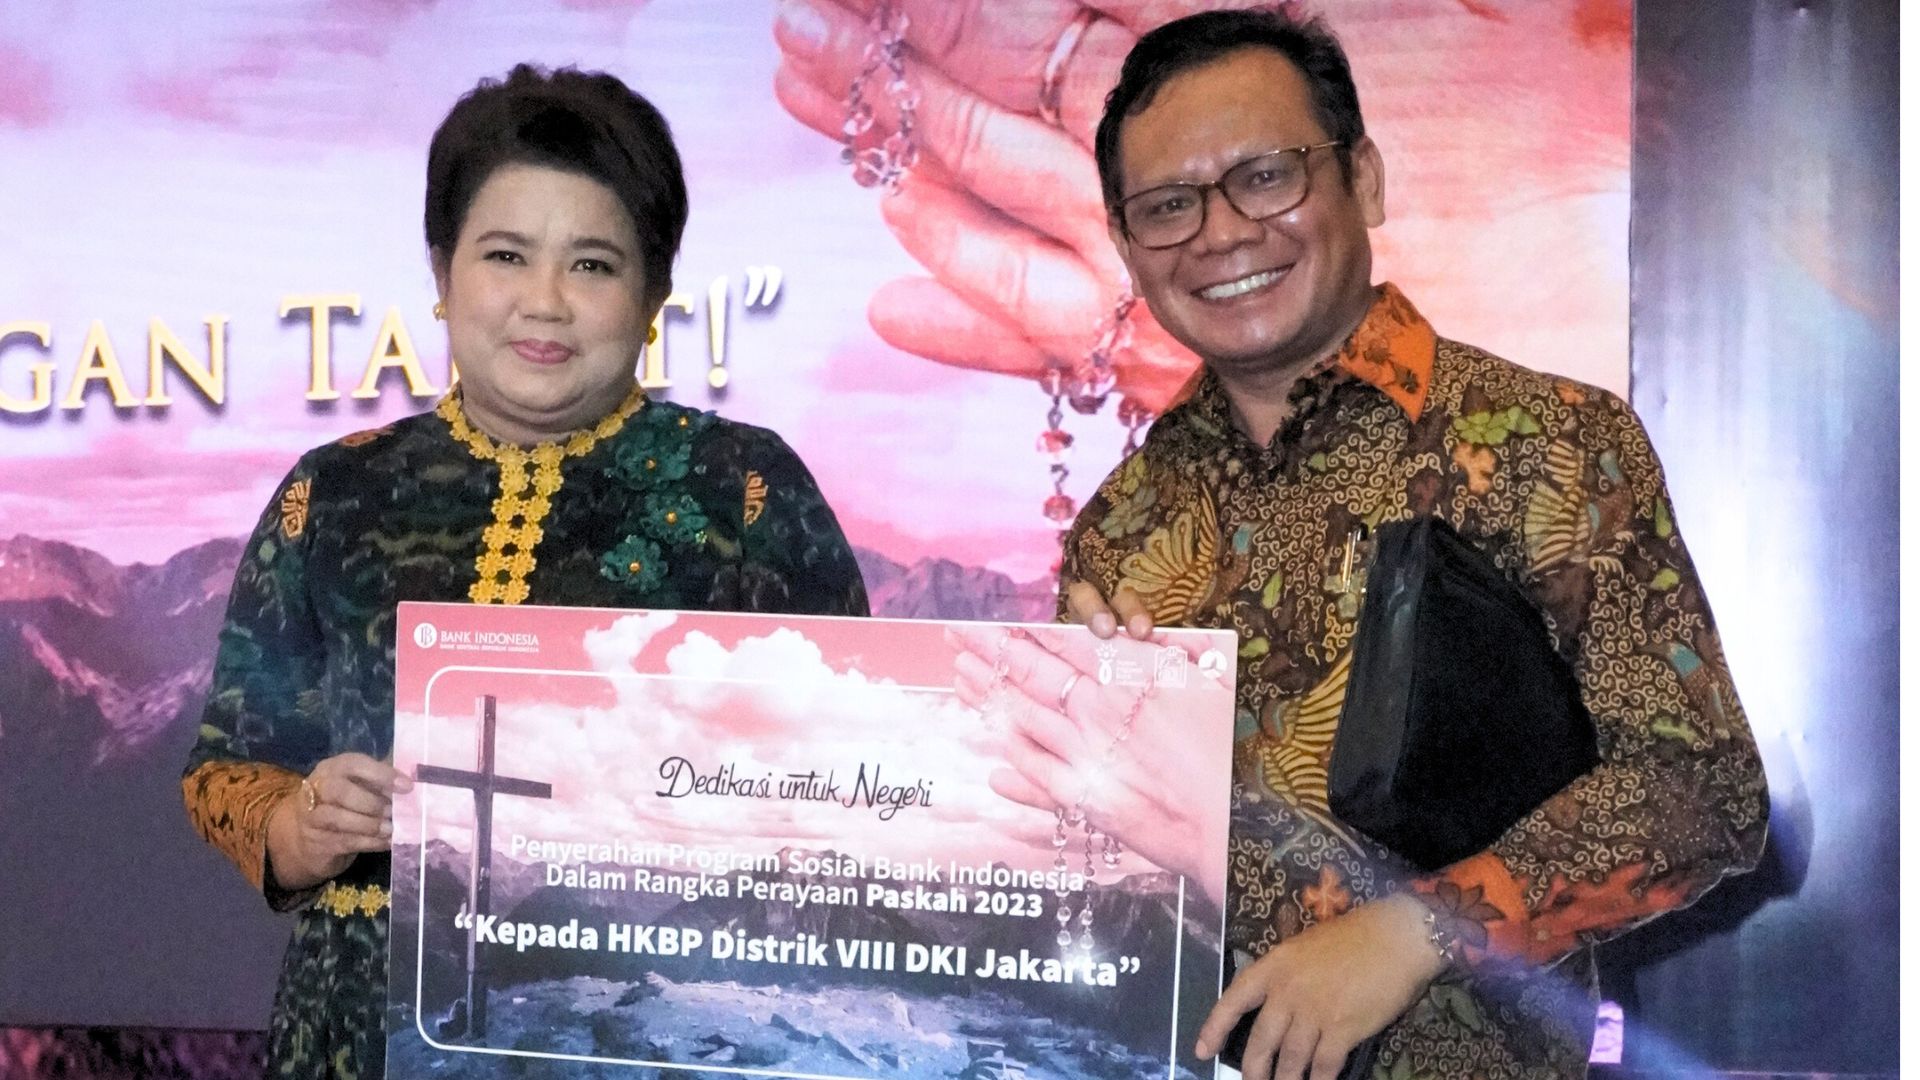  PPD Distrik DKI Jakarta Terima Dana Sosial Dari Bank Indonesia Guna Pengembangan UMKM